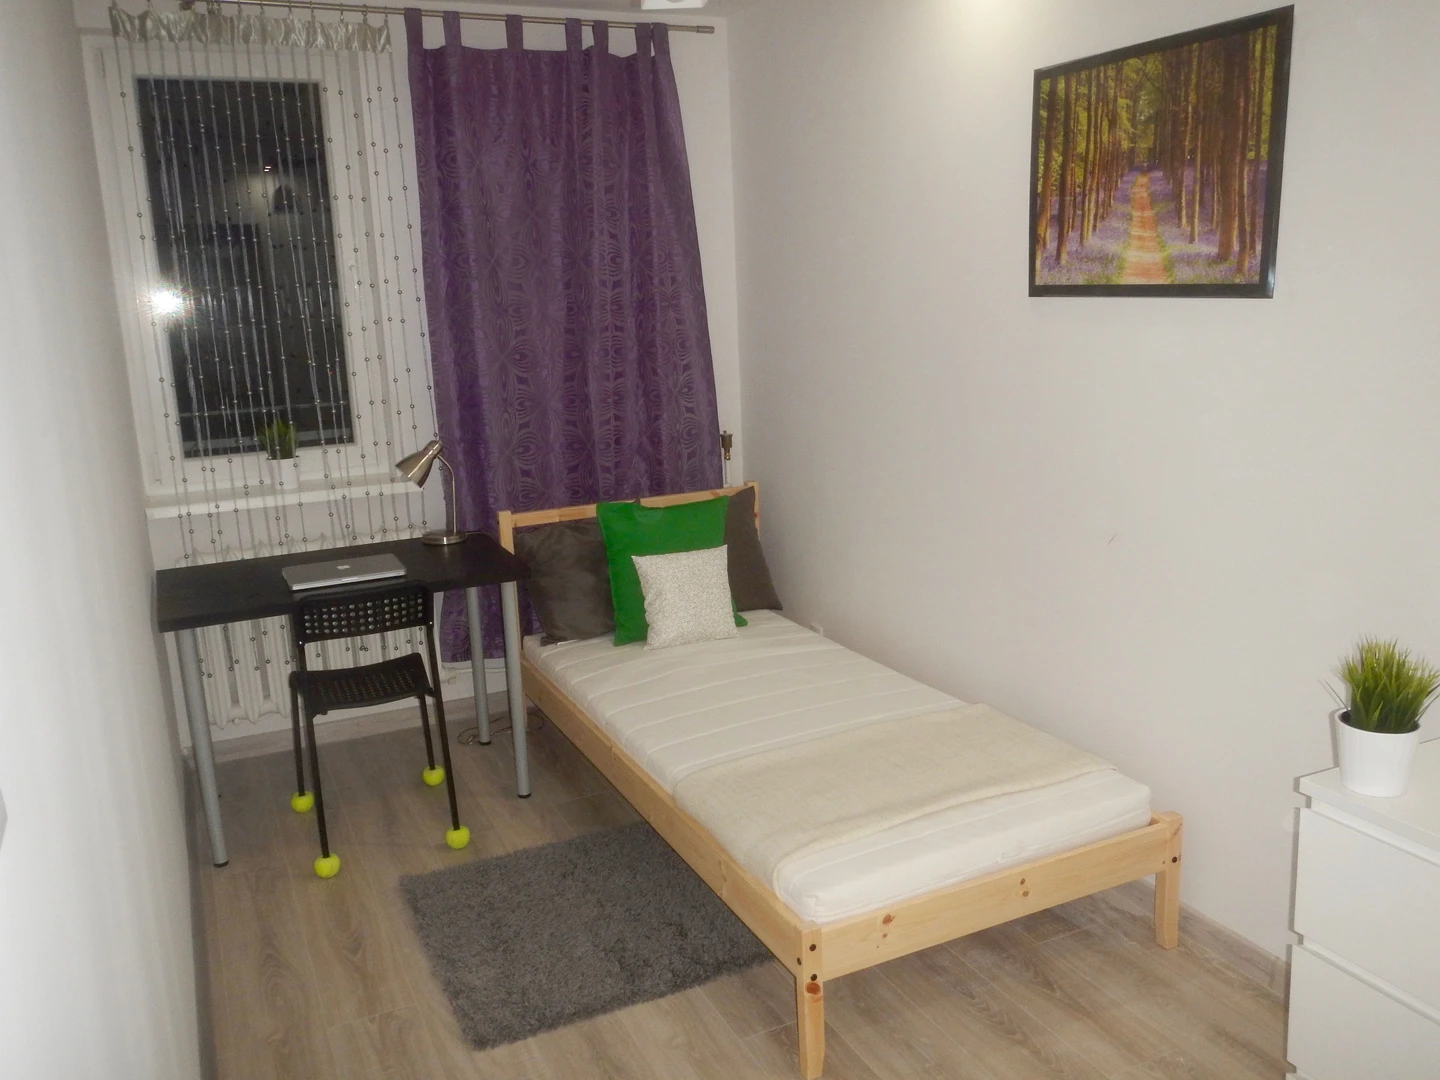 Pokój do wynajęcia z podwójnym łóżkiem w gdansk